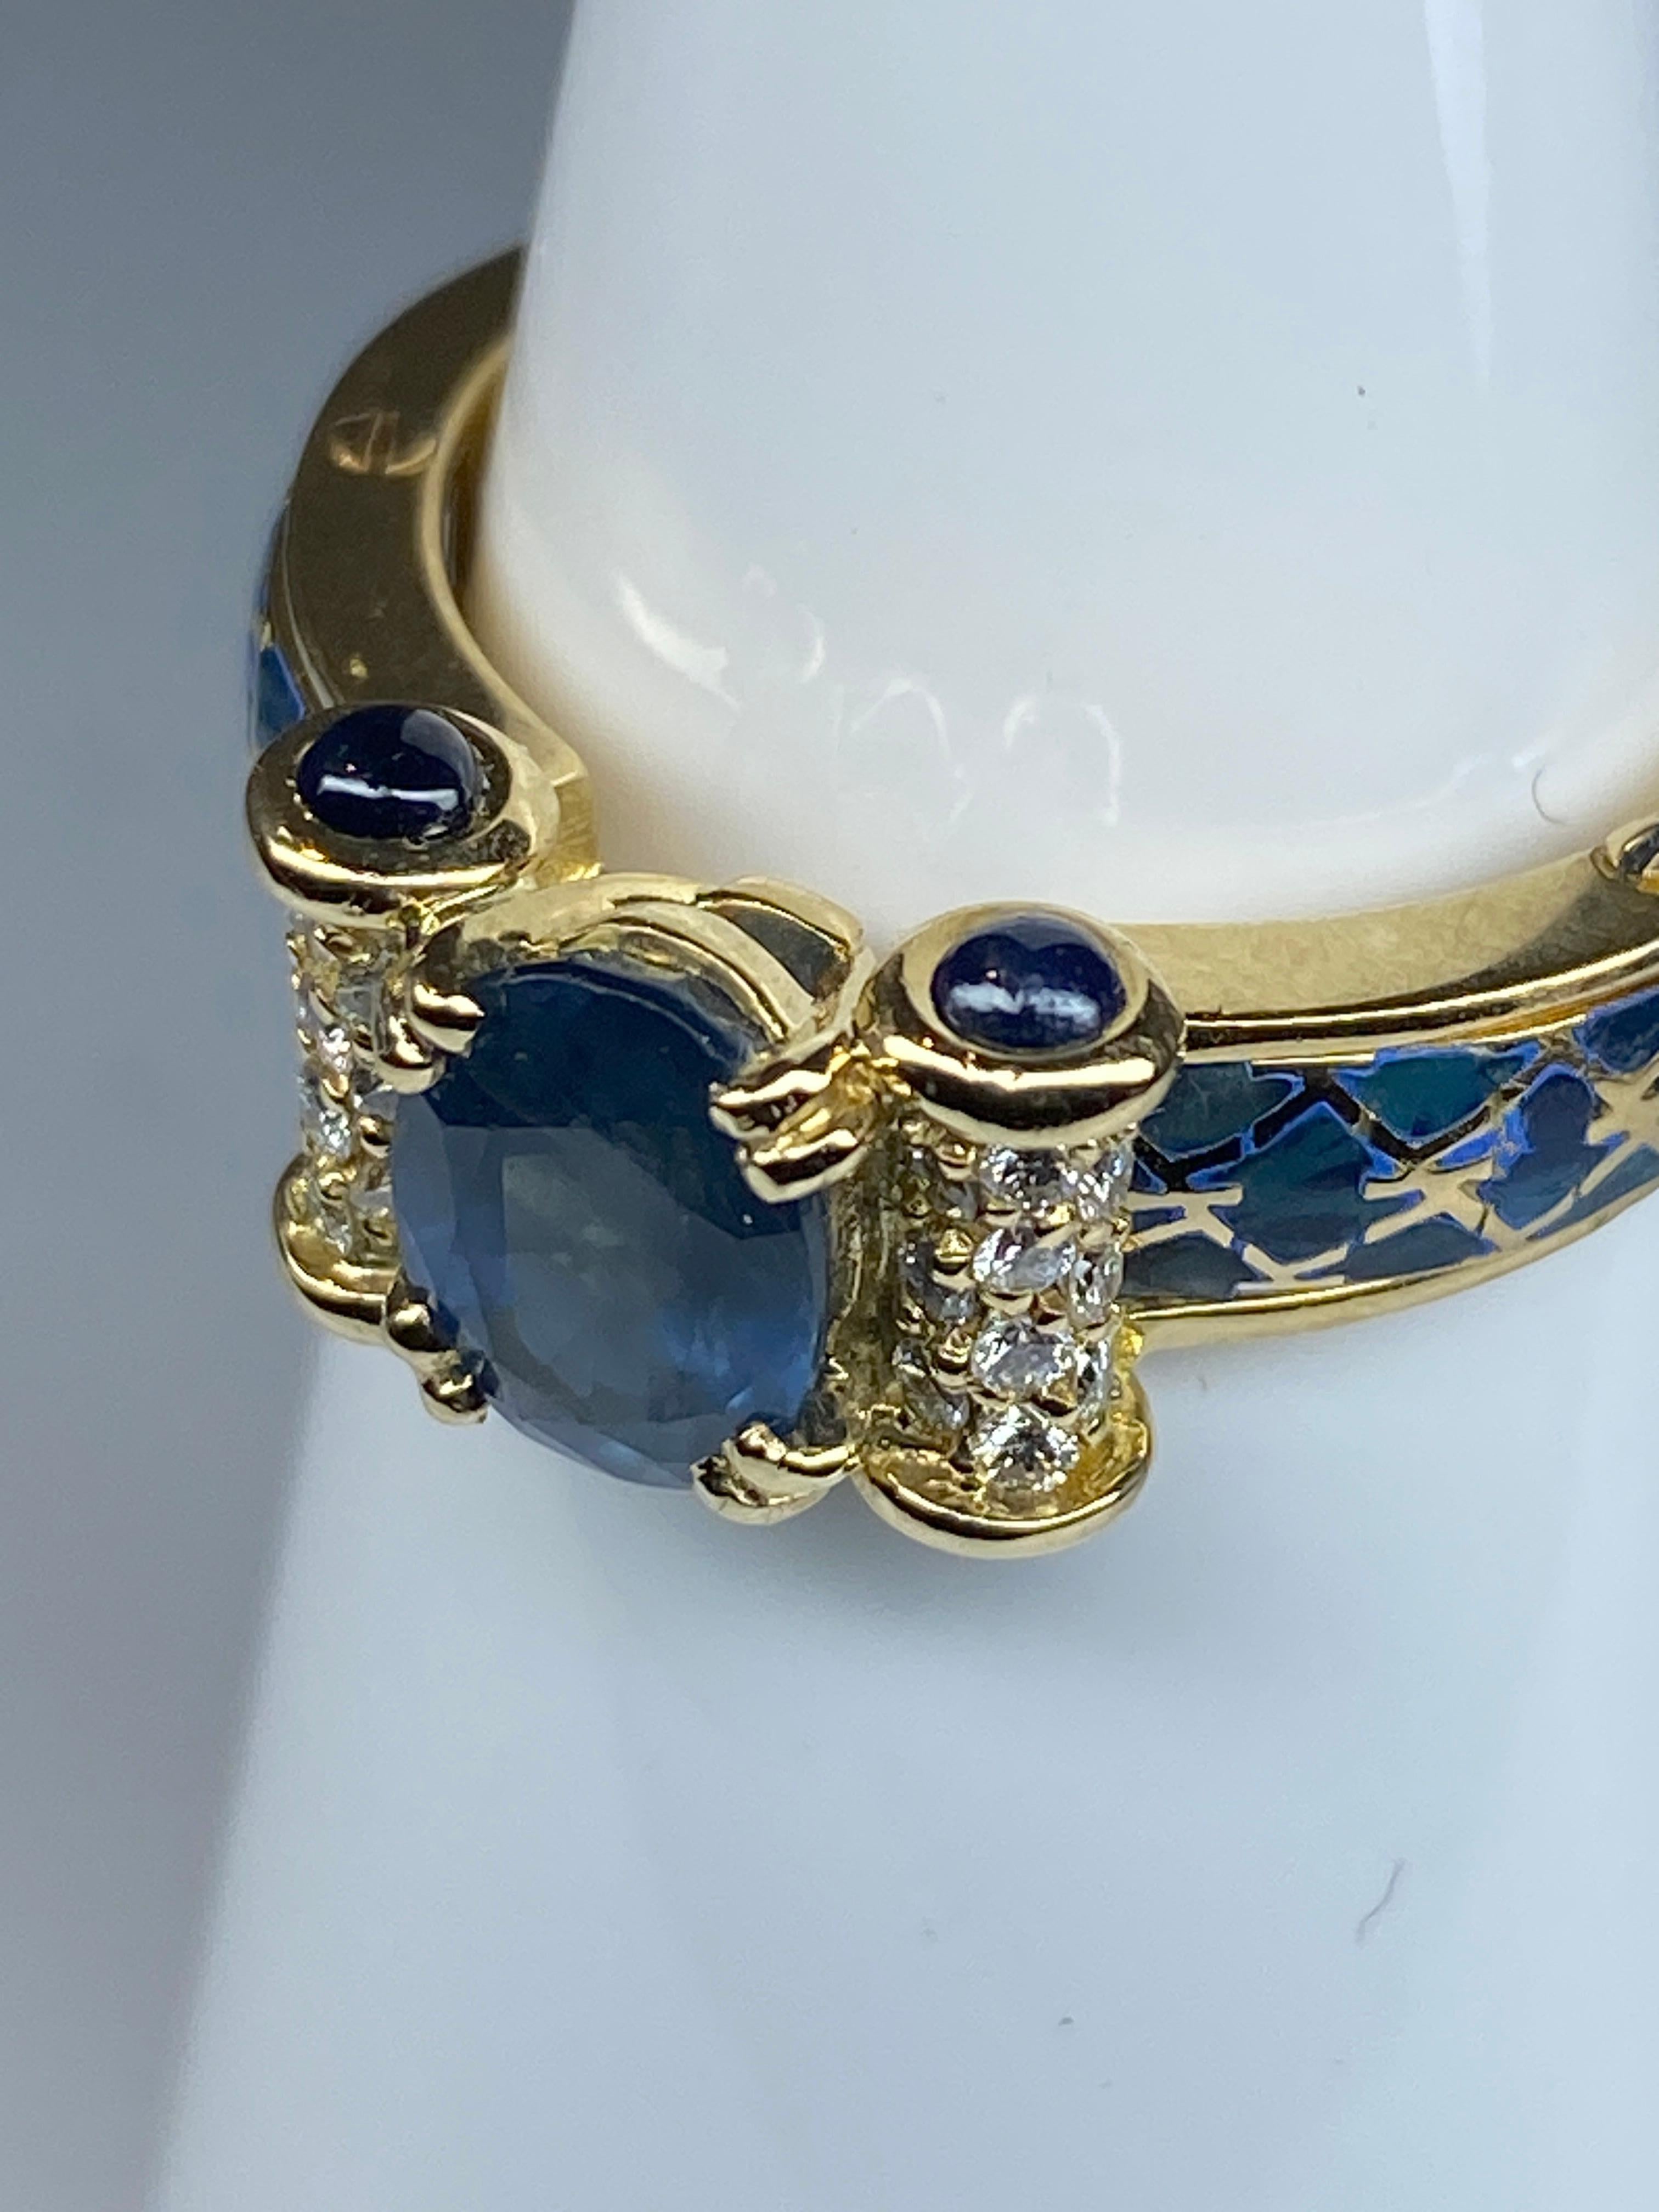 Ein ovaler Saphir von schöner blauer Farbe, der 1,71 Karat wiegt, ziert die 18-karätige Kugel in der Mitte. Er ist mit 2 Diamantenpavés mit jeweils 10 Diamanten besetzt, Gewicht der Diamanten ca. 0,20 Karat. Jedes Rouleau ist an den Außenseiten mit